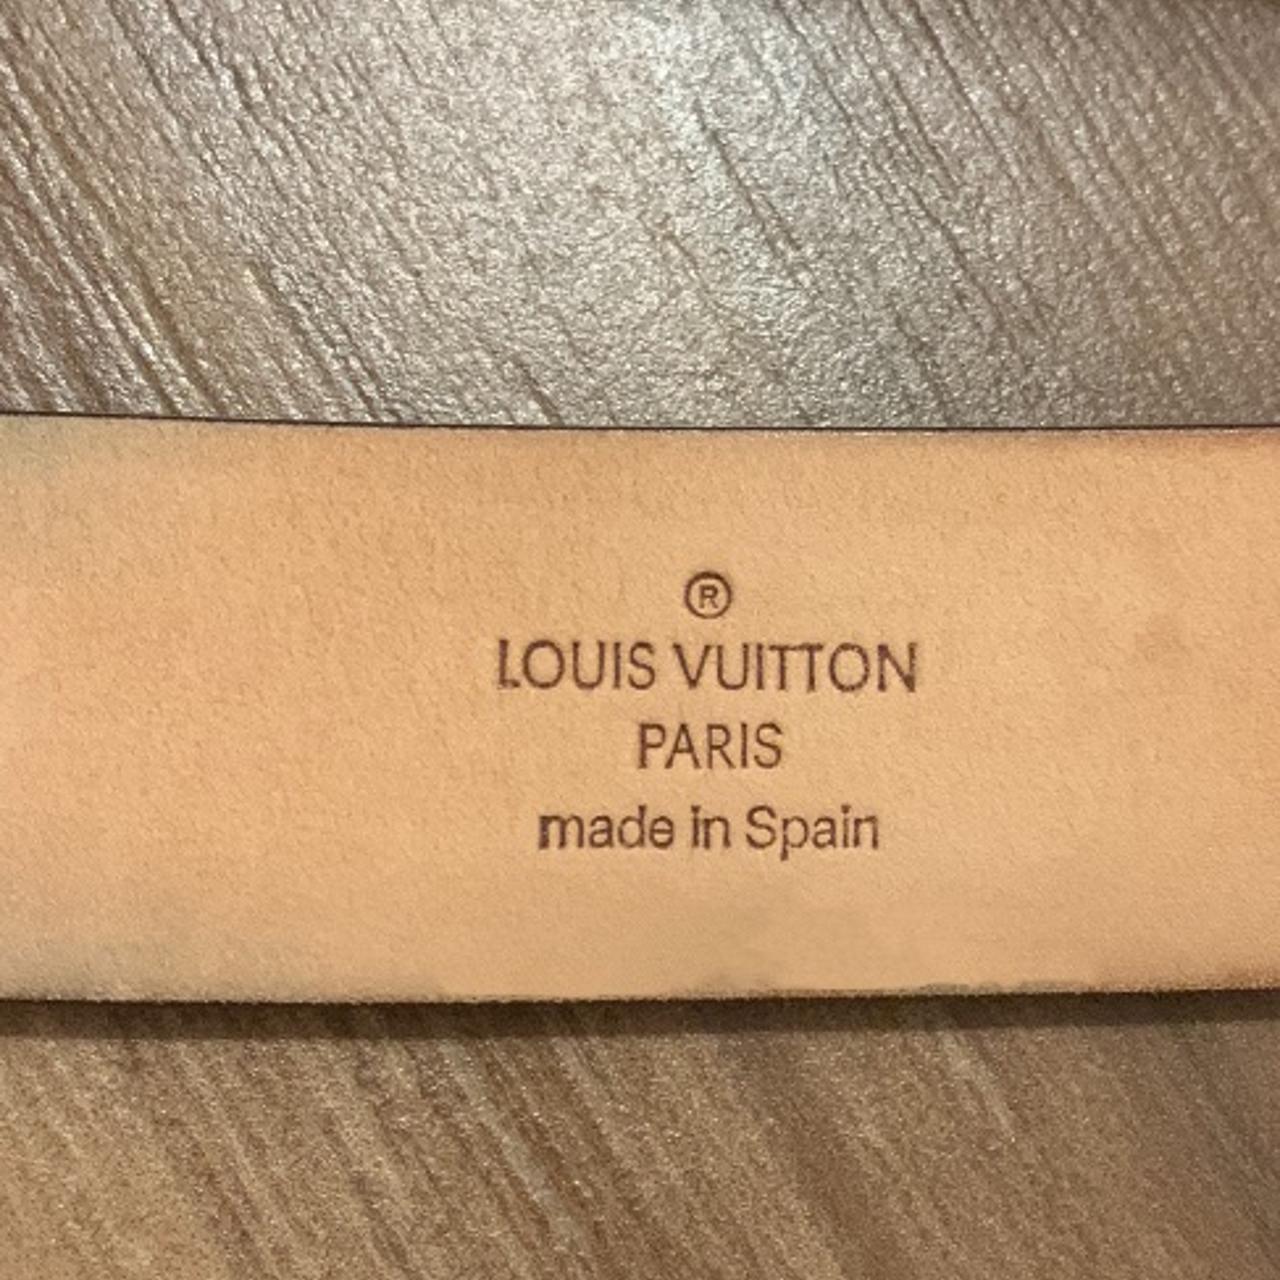 Cintura Louis Vuitton monogram originale. In 🇬🇧